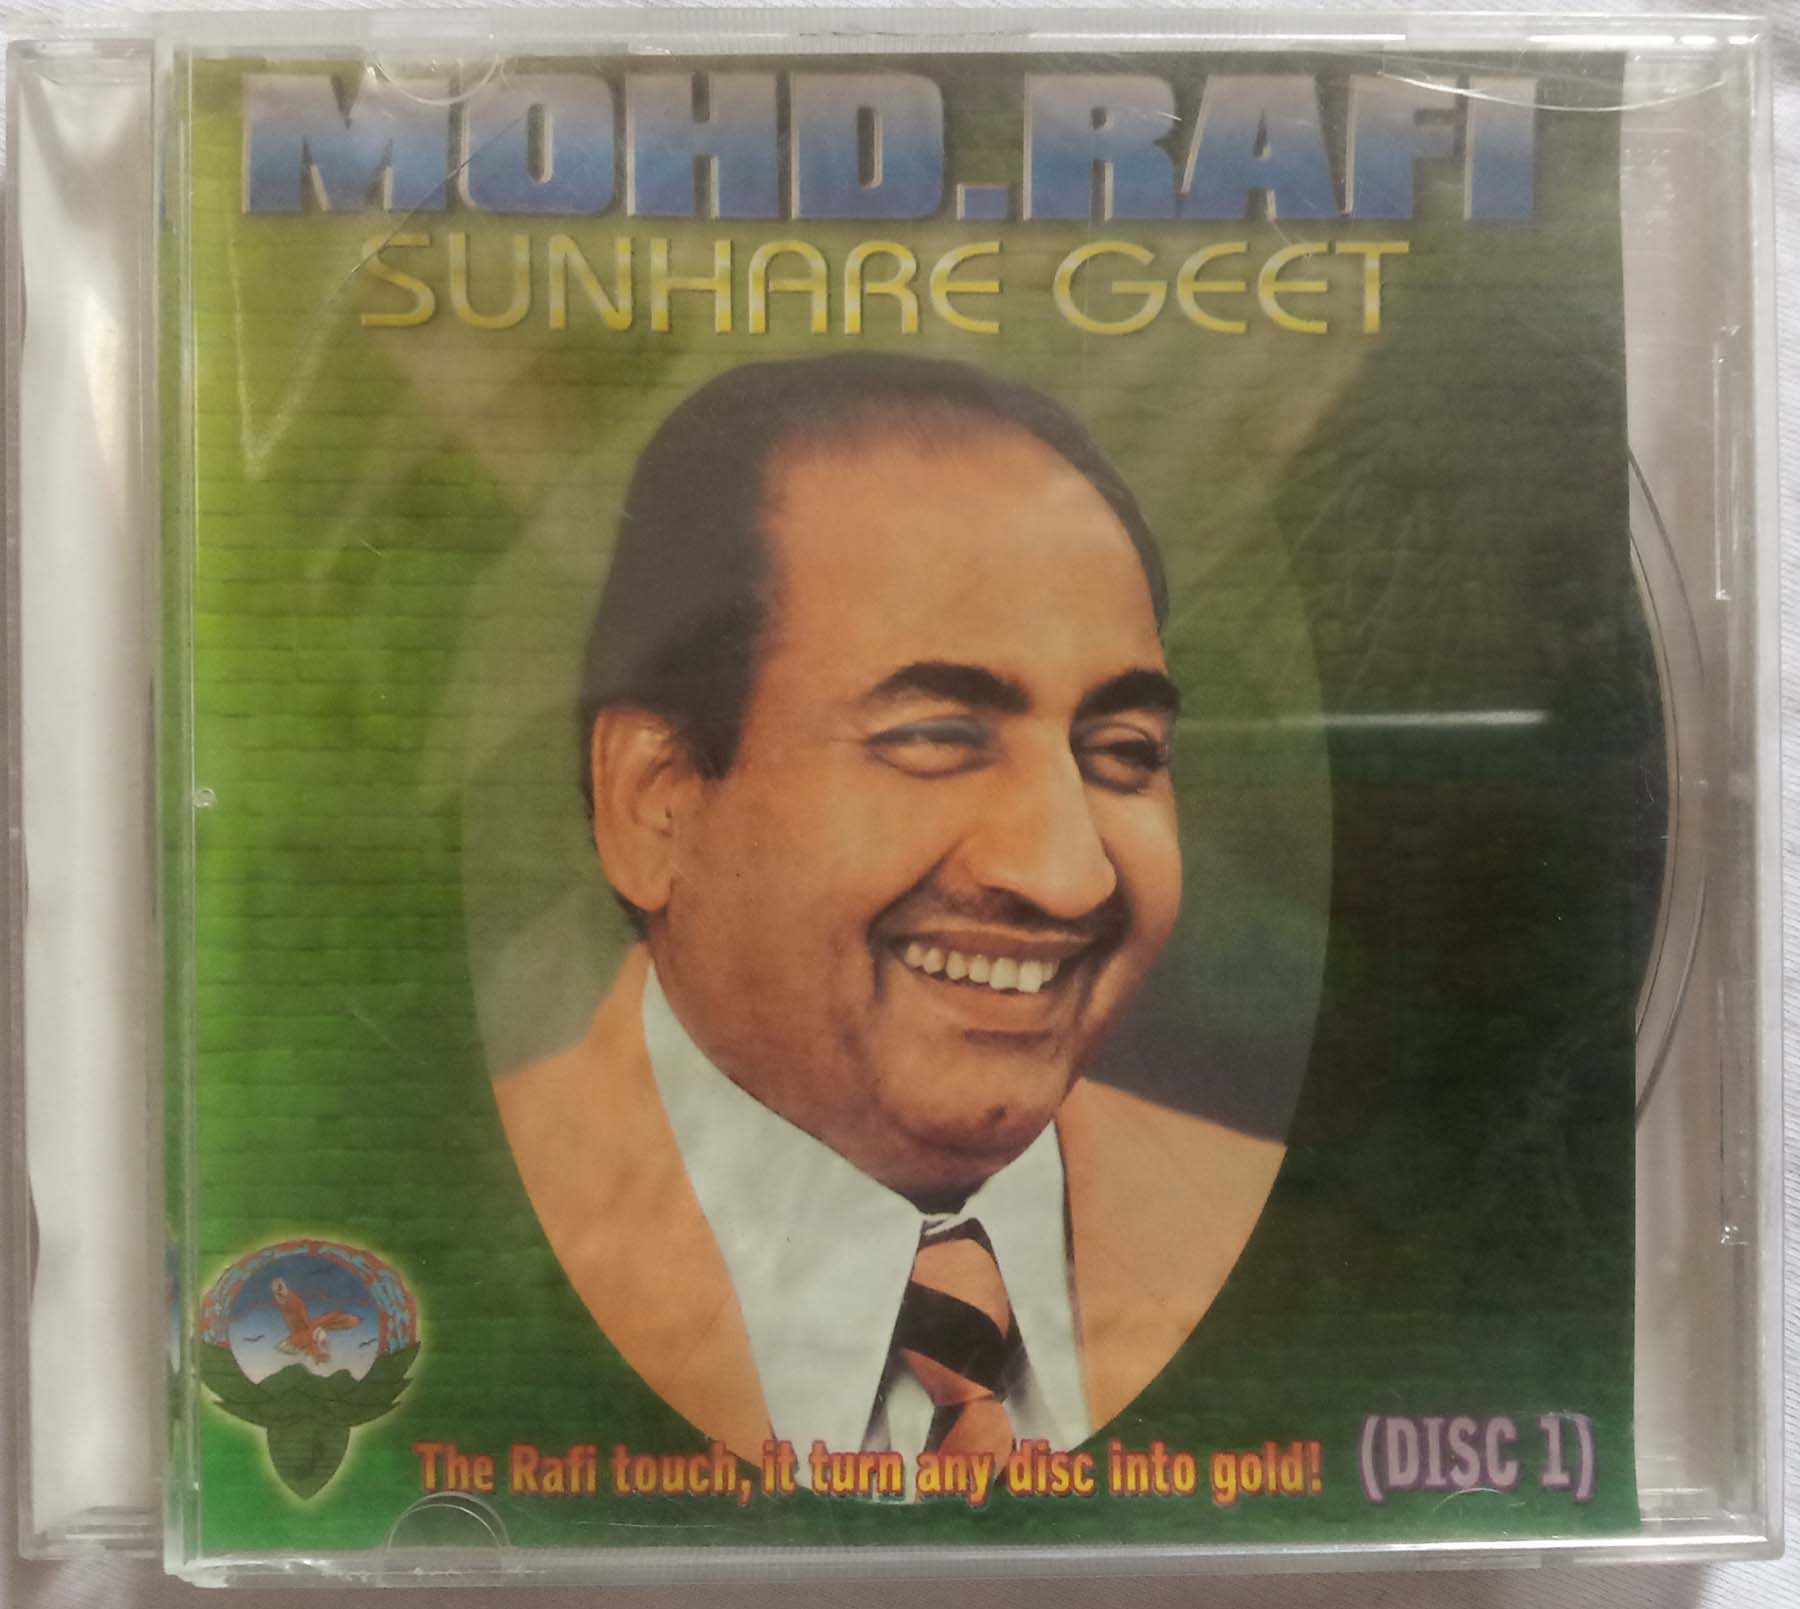 Mohd. Rafi Sunhare Geet Hindi Audio CD banumass.com